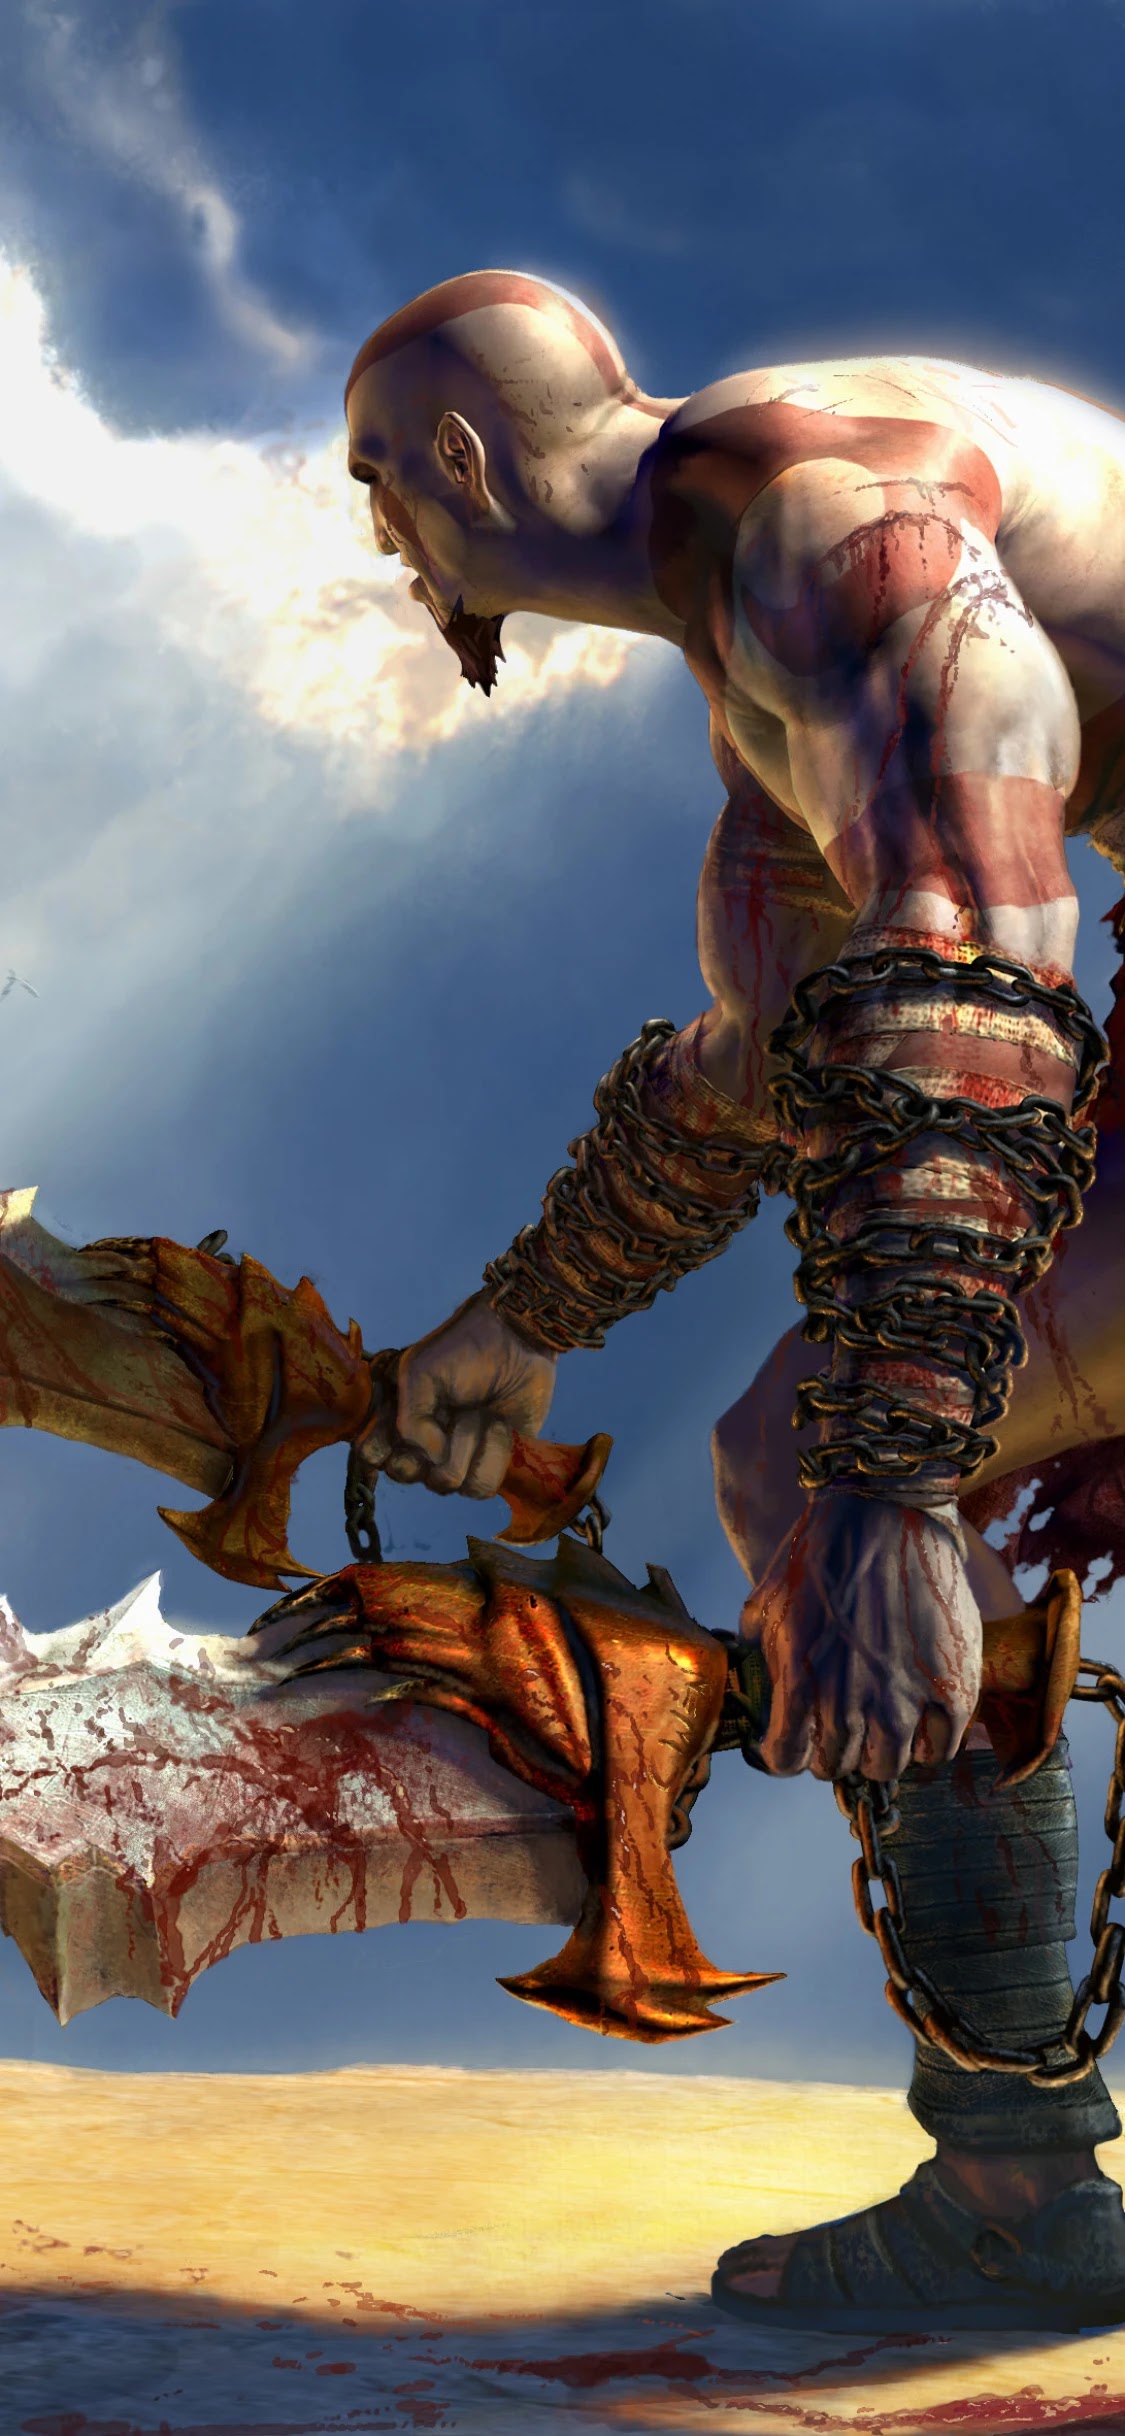 Kratos phone wallpaper - Video Game - God Of War - ponselwallpaper